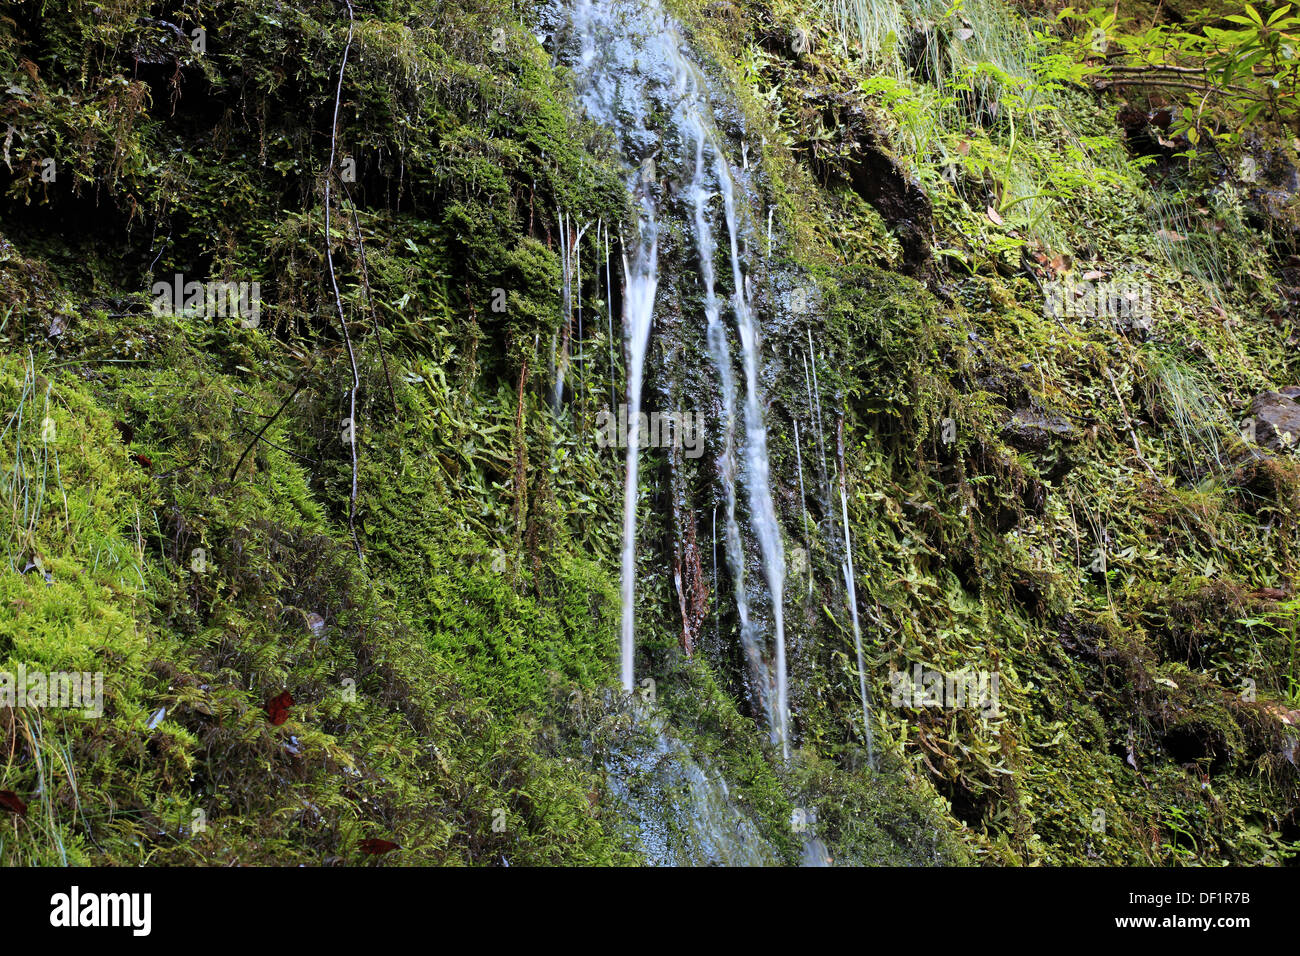 Madera, Isola ad est, su Ribeira Frio, una piccola cascata, trickle su muschi e licheni Foto Stock